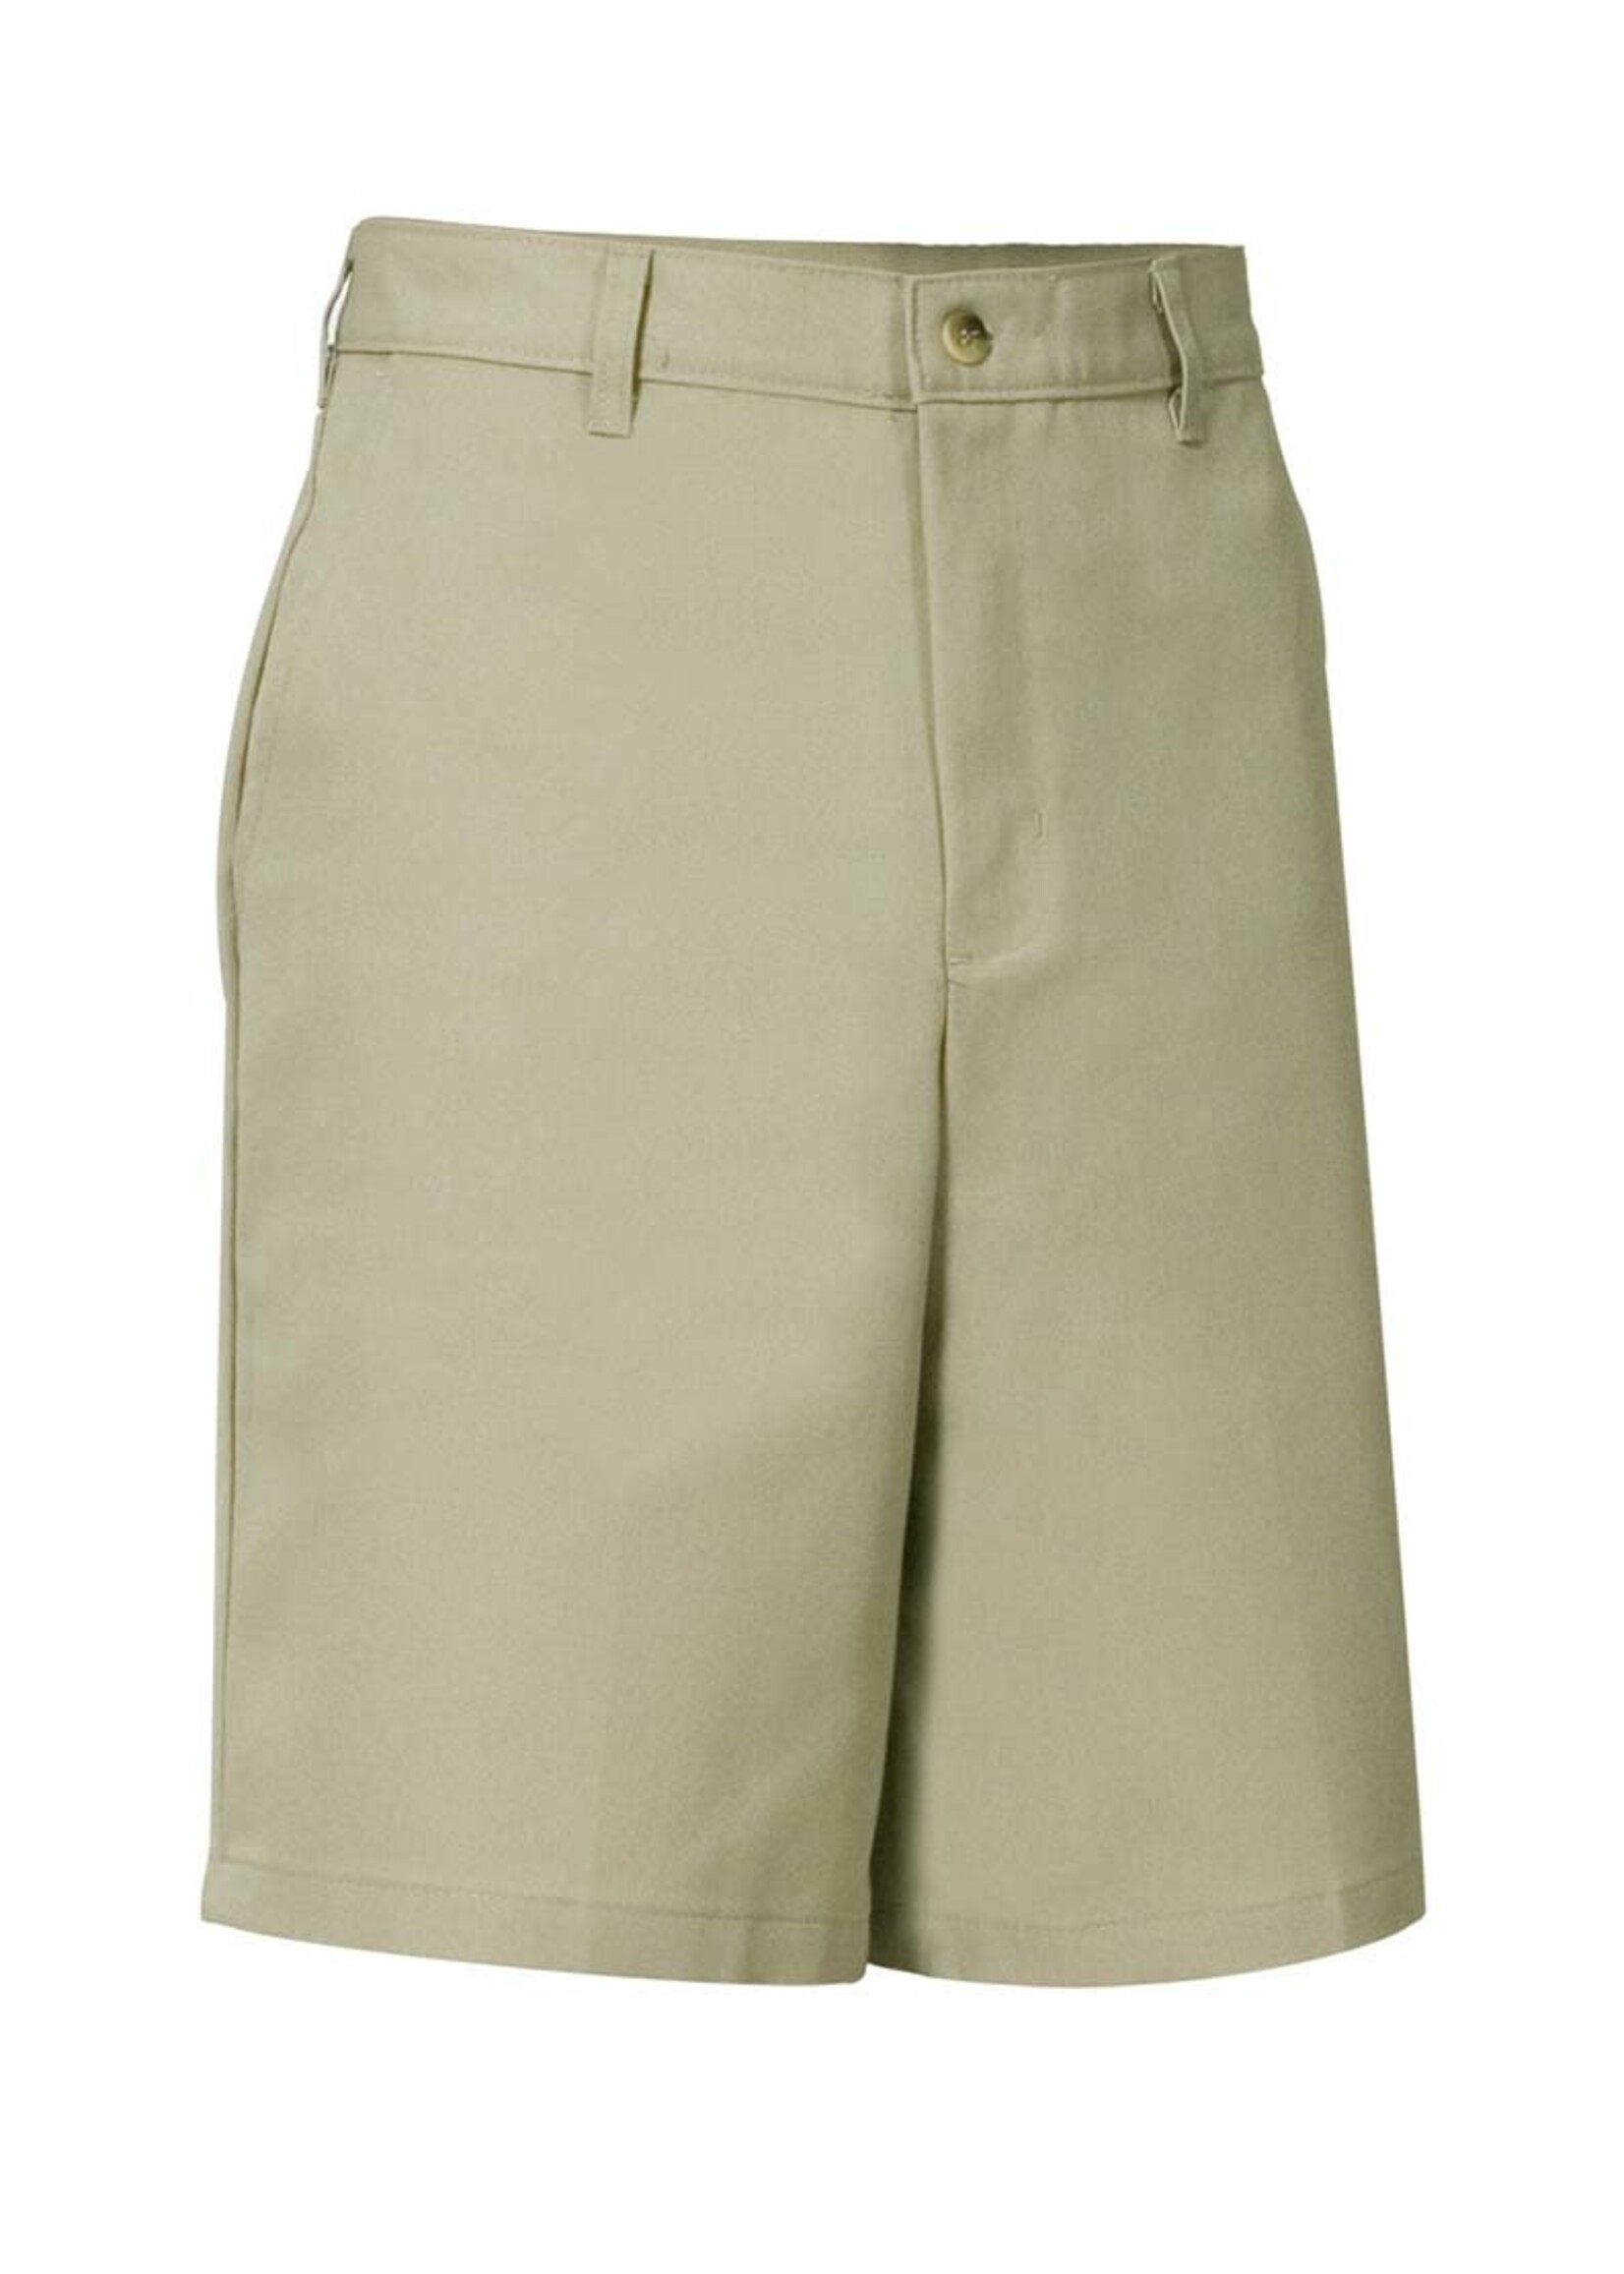 A+ Boys Flat Front Shorts (BK)